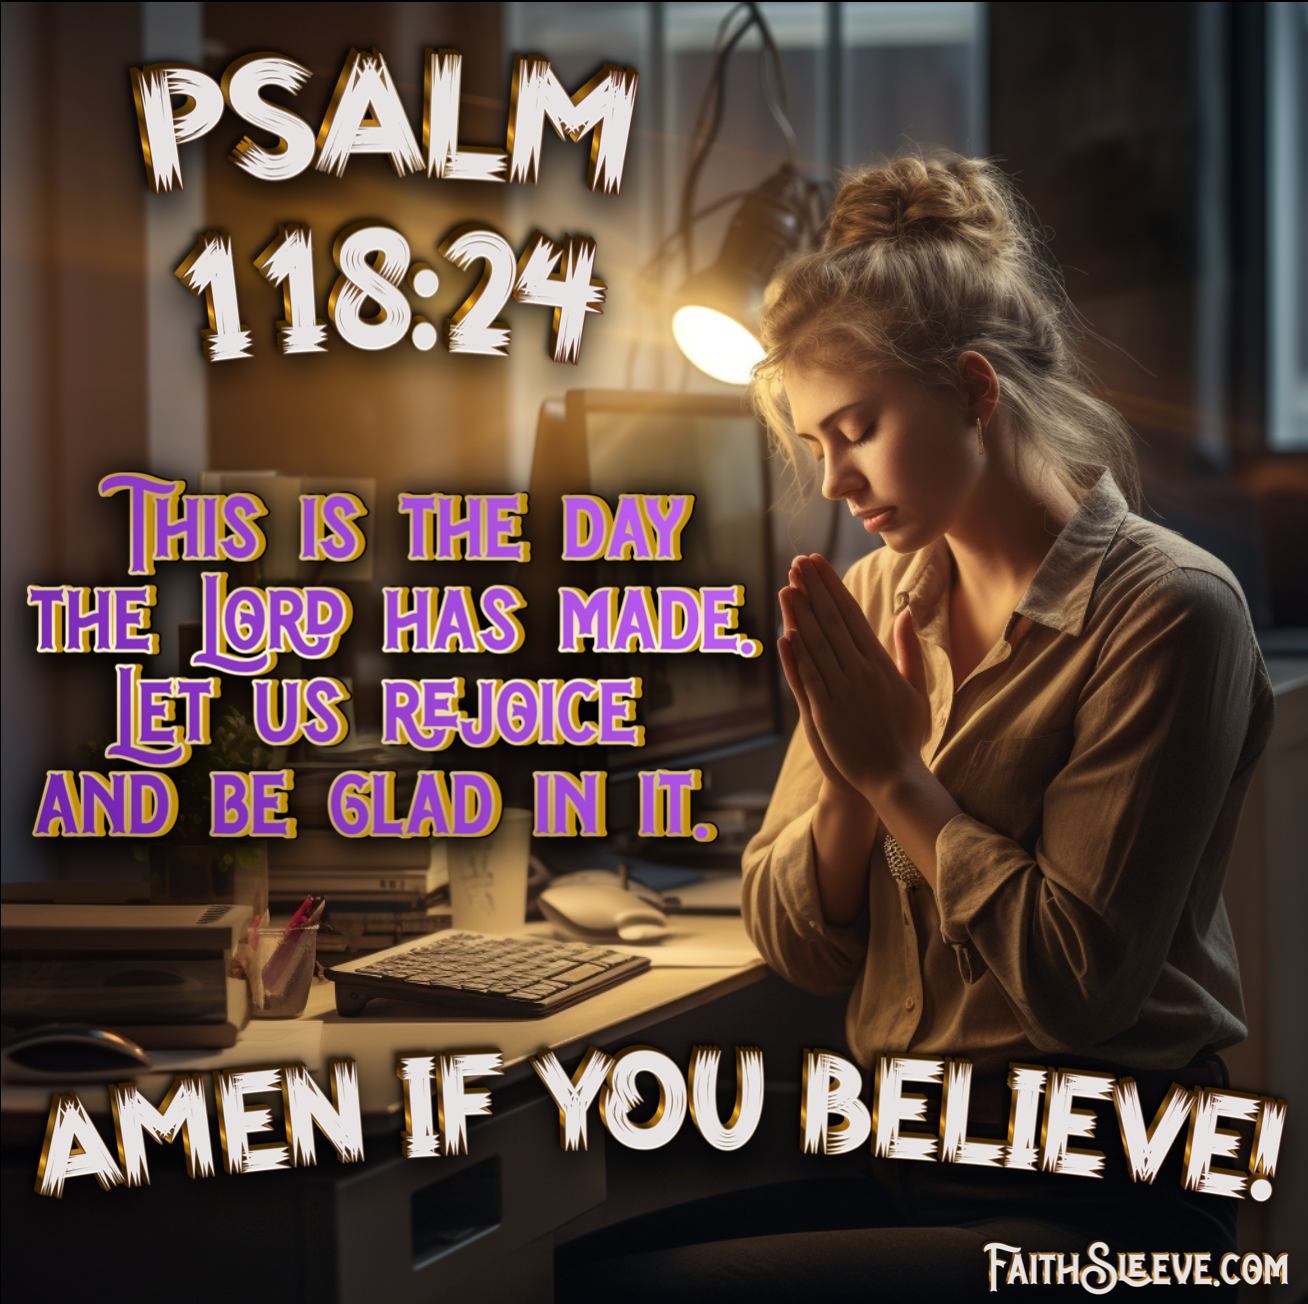 Psalm 118:24 Bible Verse. Let Us Rejoice. 